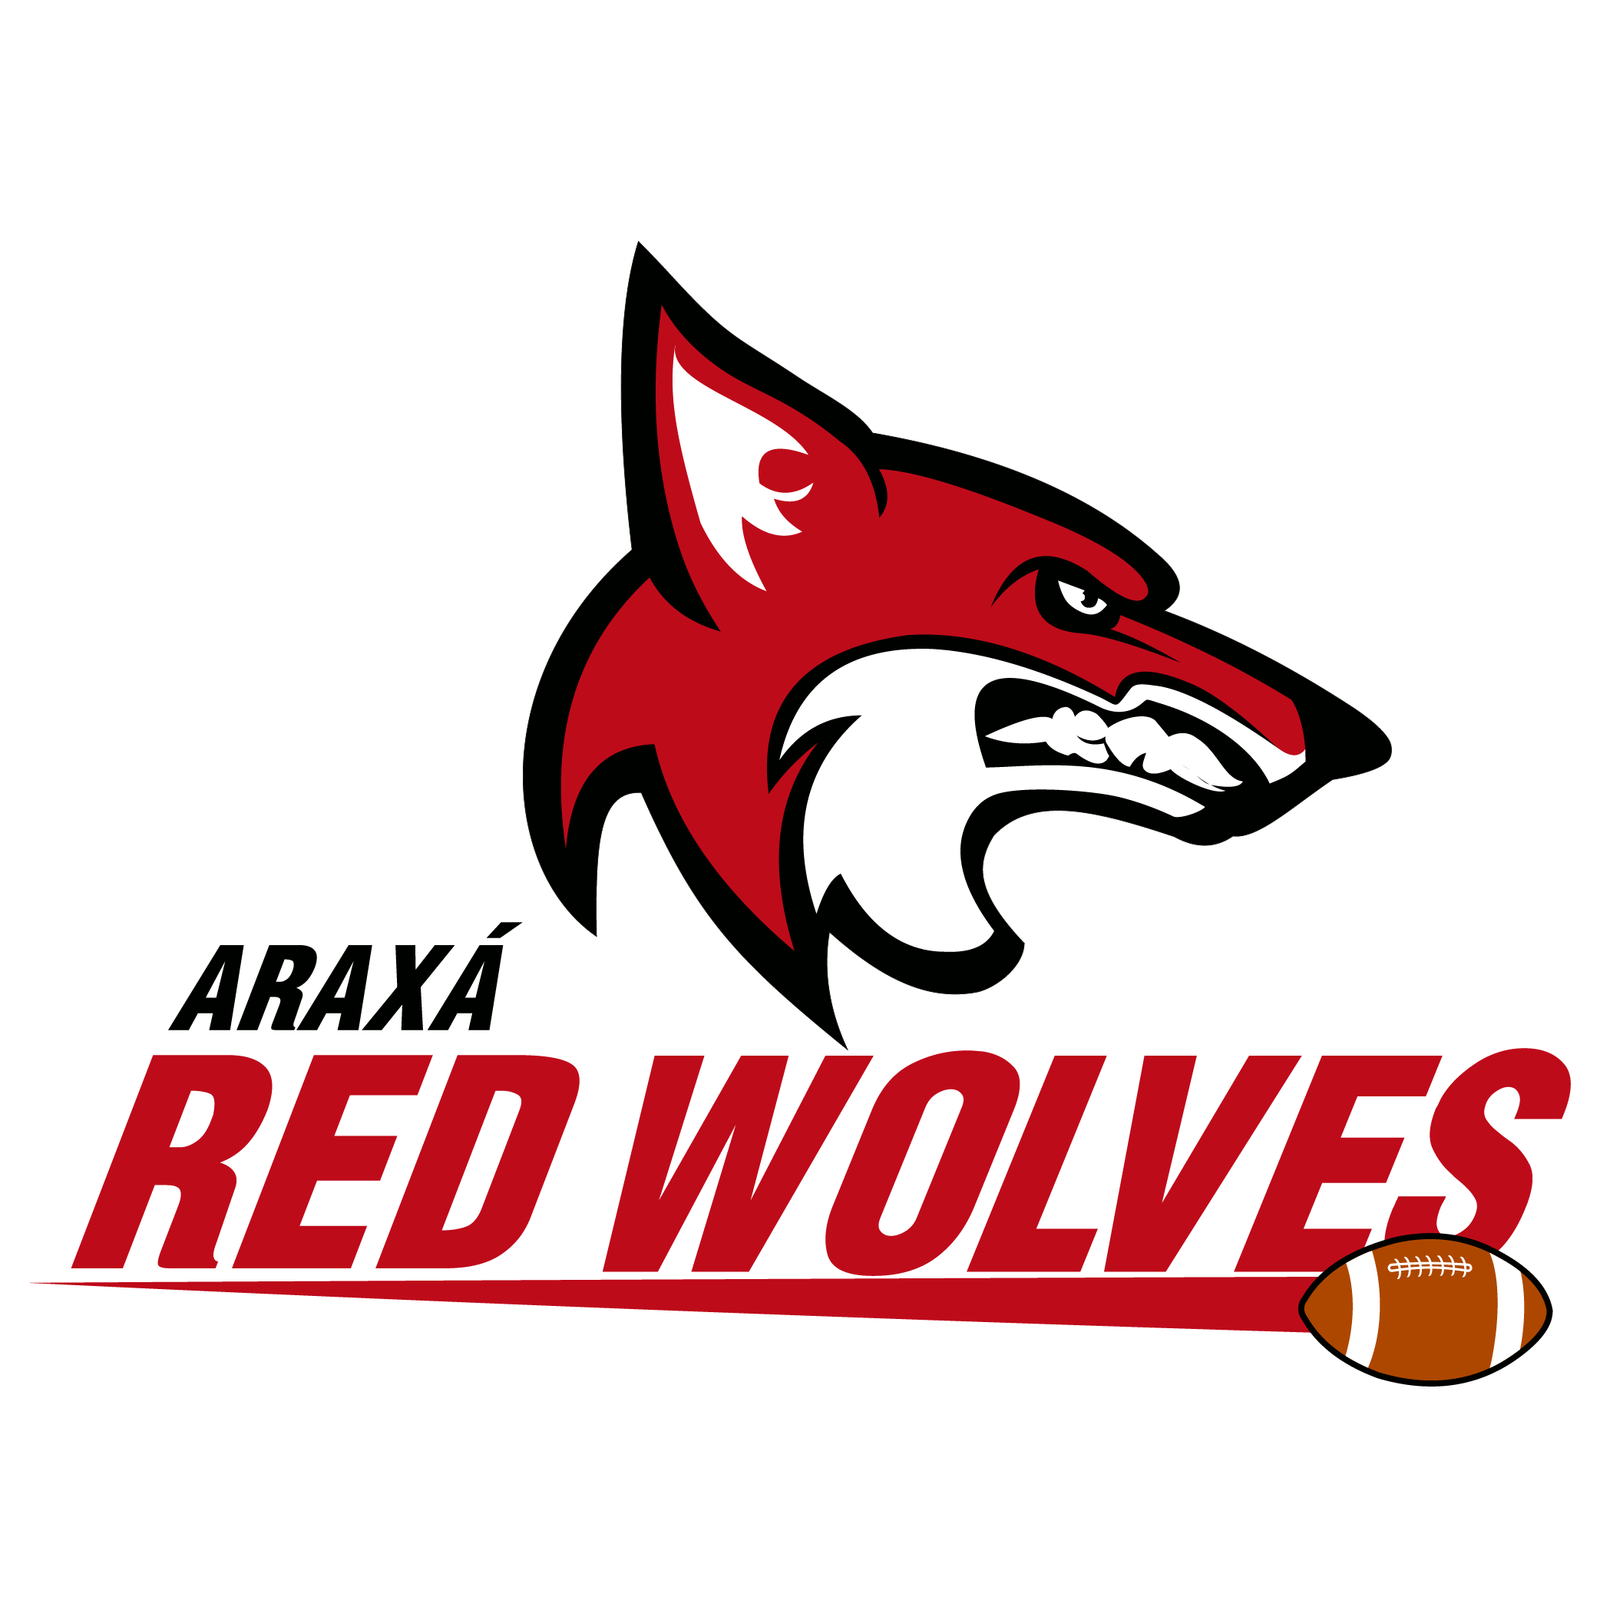 Araxá Red Wolves